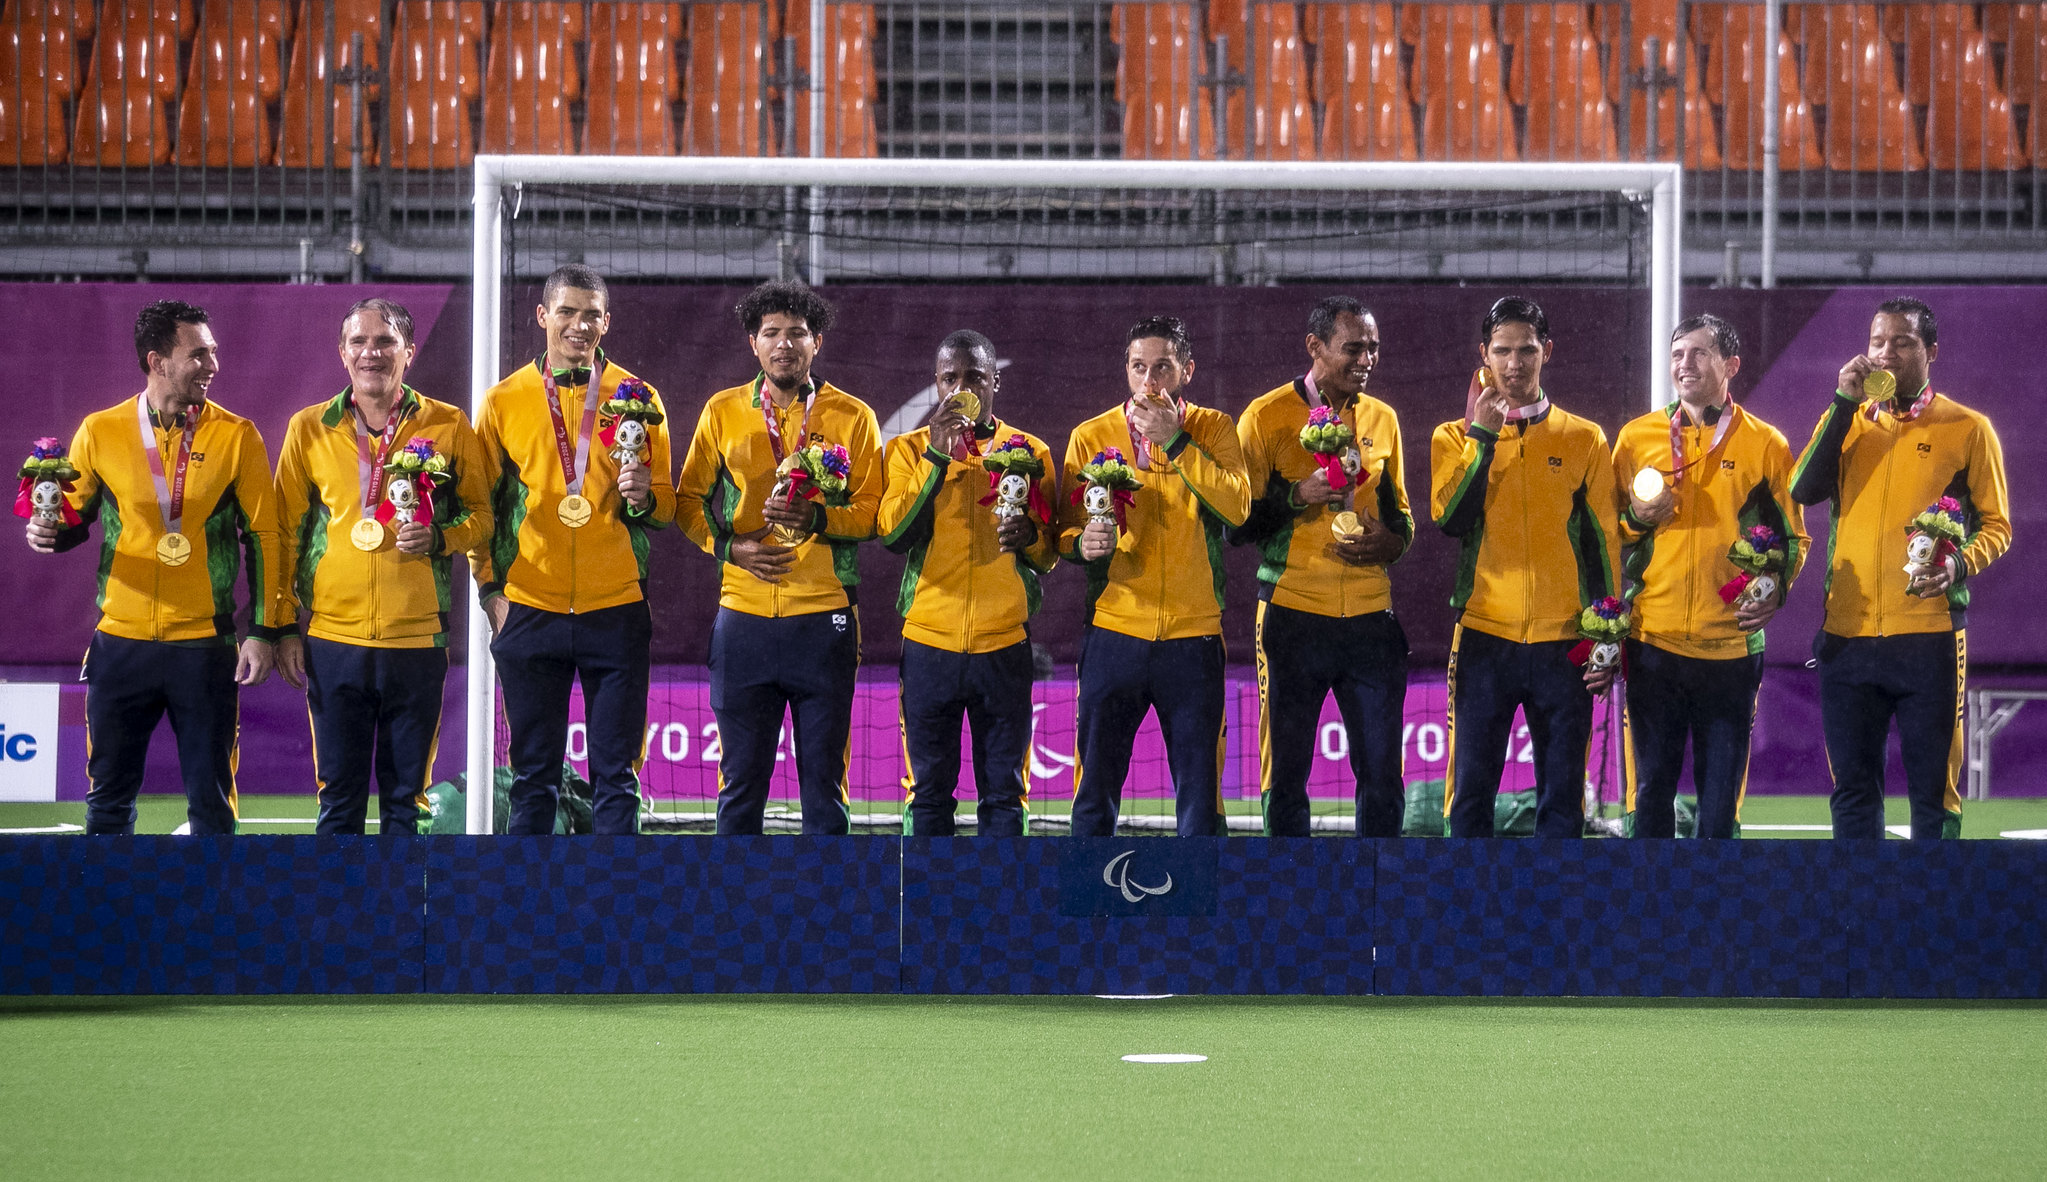 Foto dos jogadores do futebol de 5 durante o pódio ao receberem medalha de ouro em Tóquio